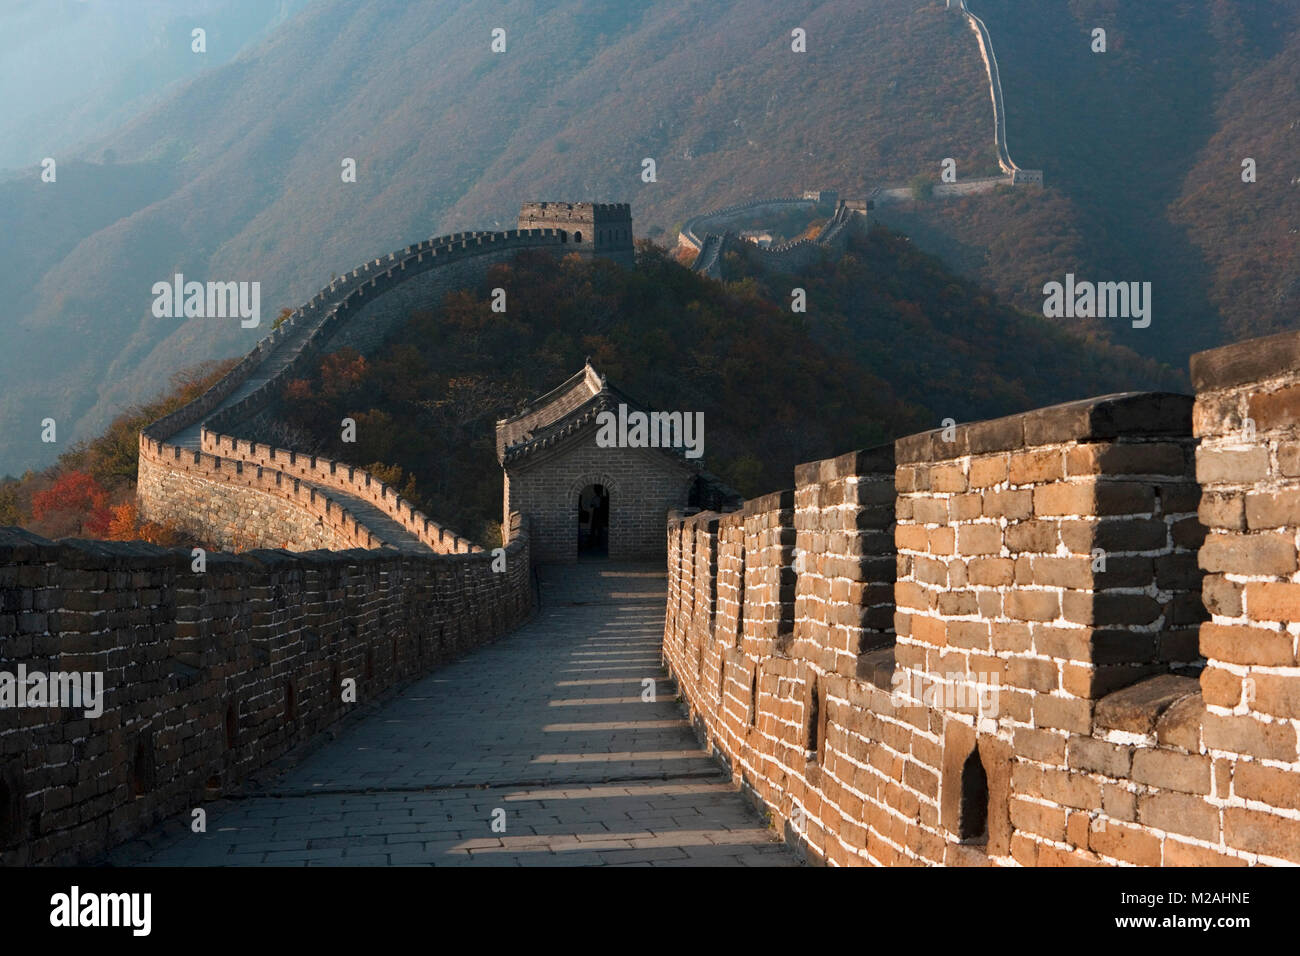 La Chine. Mutianyu, près de Beijing. La Grande Muraille. UNESCO World Heritage site. Banque D'Images